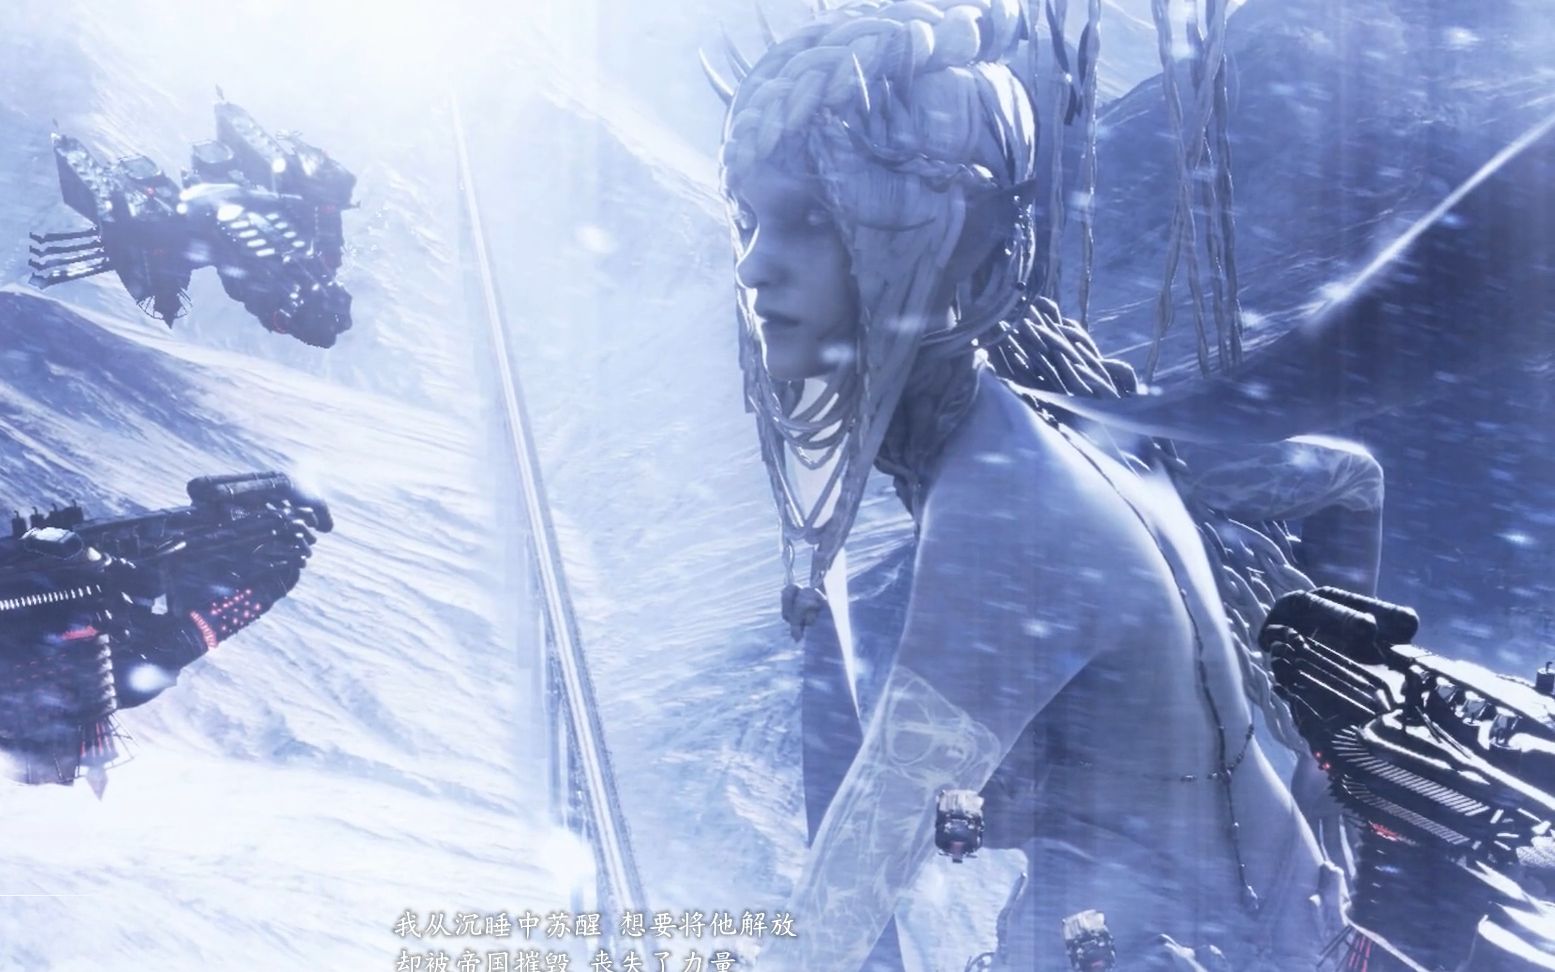 最终幻想15 Final Fantasy Xv 第12章 2 冰神的气息打倒周围所有使骸死爪魔冰神希瓦甘蒂亚娜 哔哩哔哩